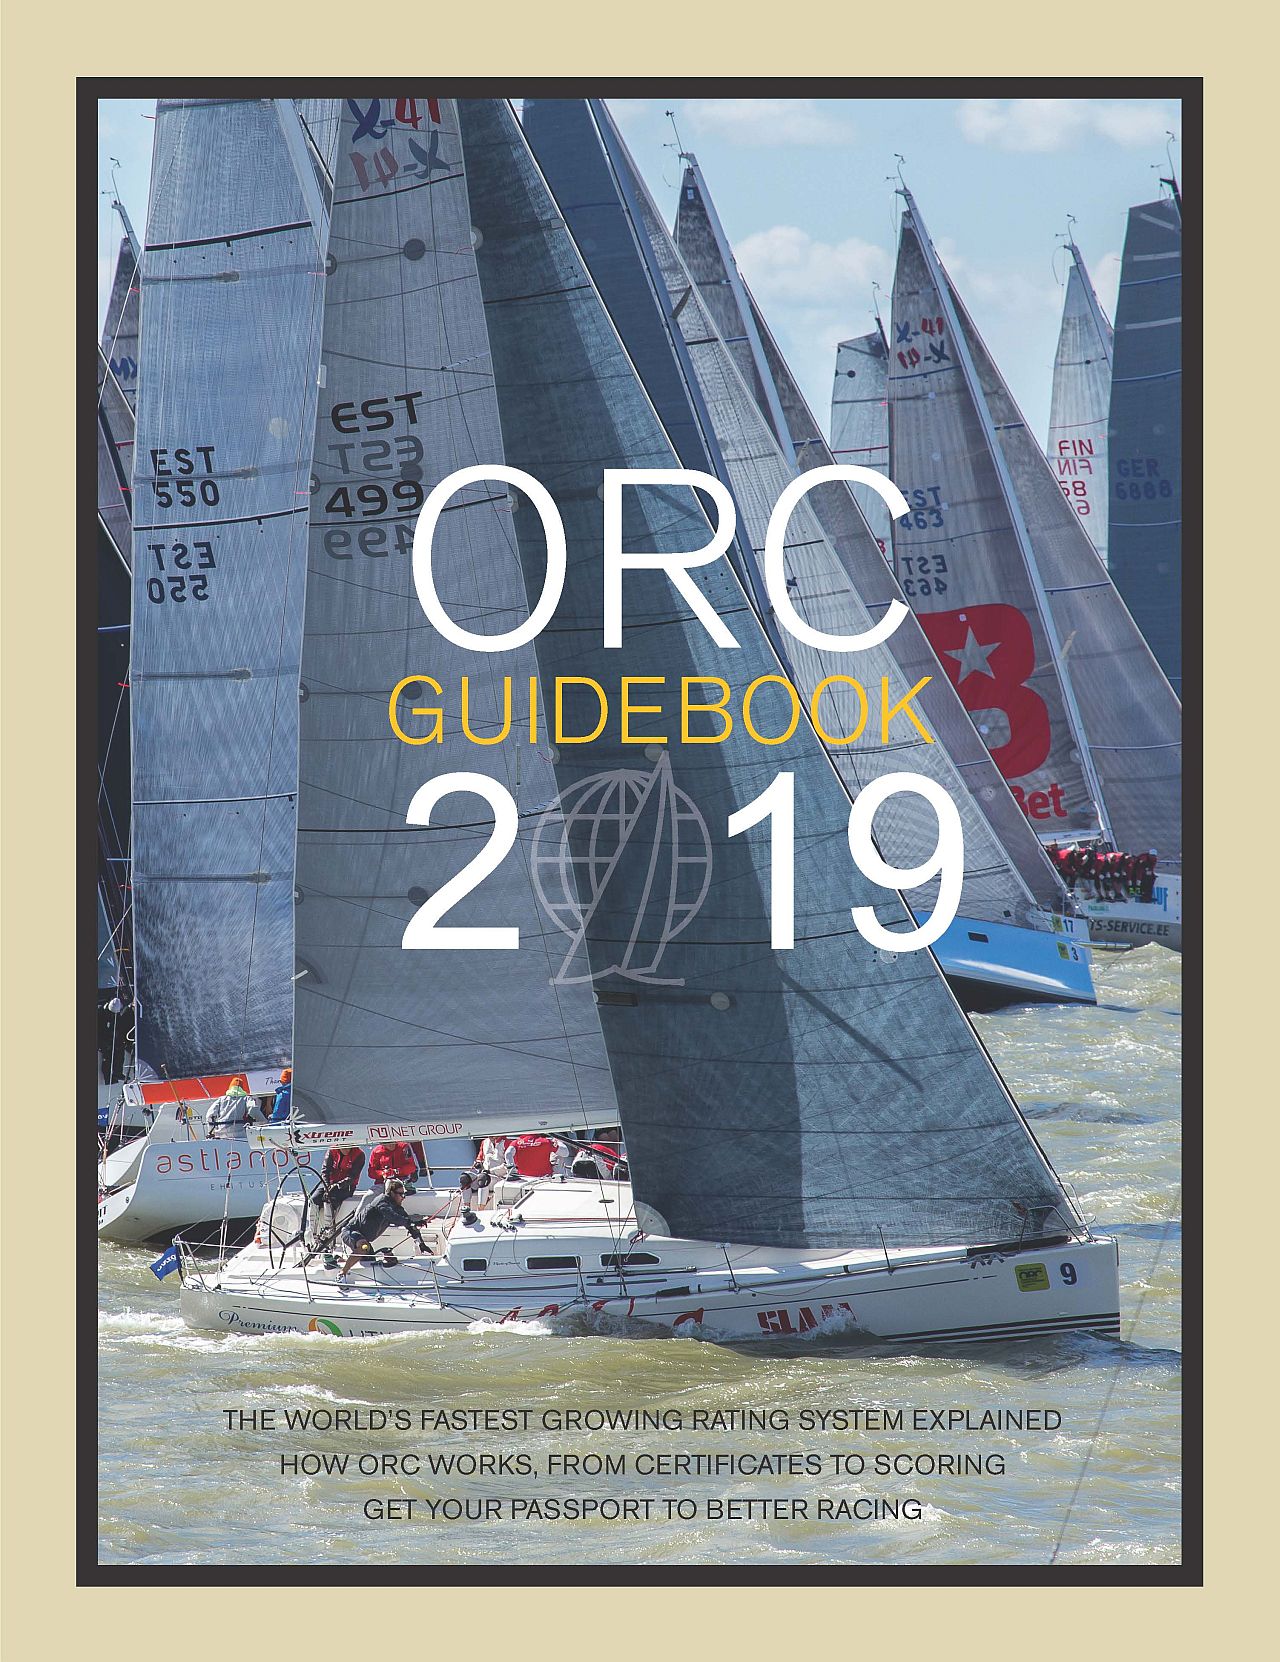 L’Offshore Racing Congress (ORC) annuncia la pubblicazione dei Regolamenti ORC 2019, il Velocity Prediction Program (VPP) usato per produrre i certificati, e gli altri prodotti associati